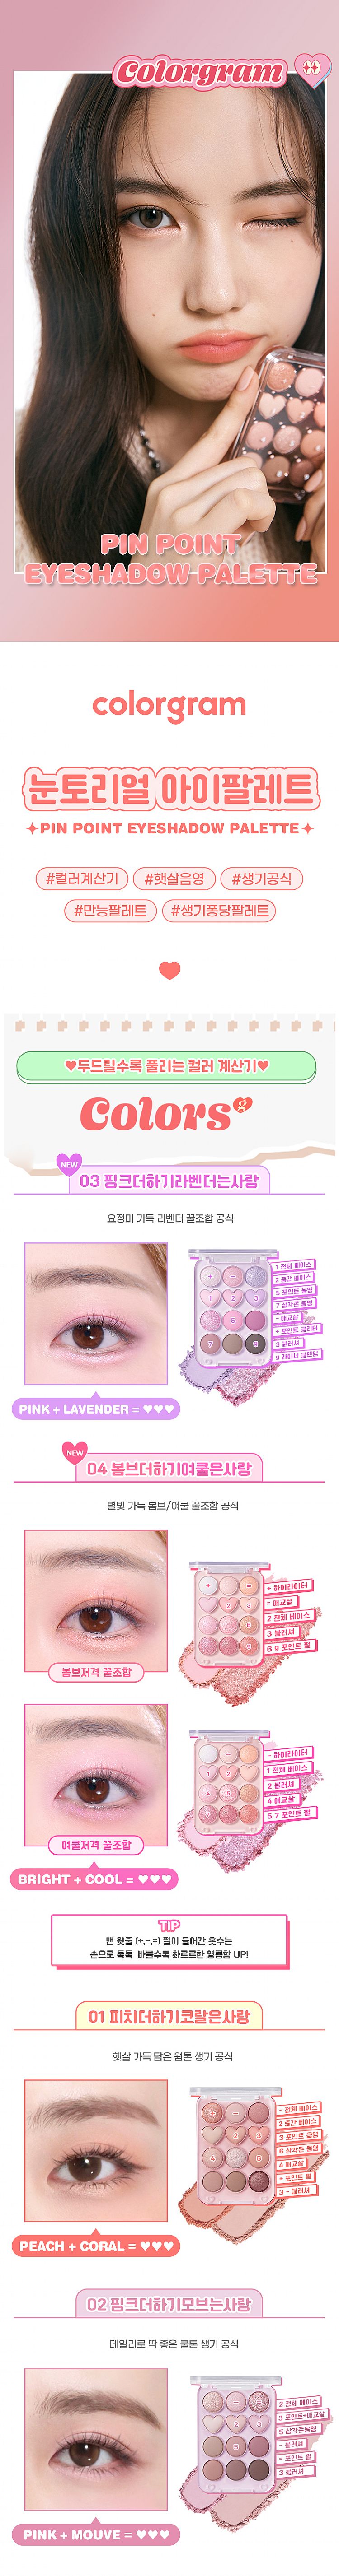 韓國 眼妝 眼妝 眼影 眼影盤 眼妝